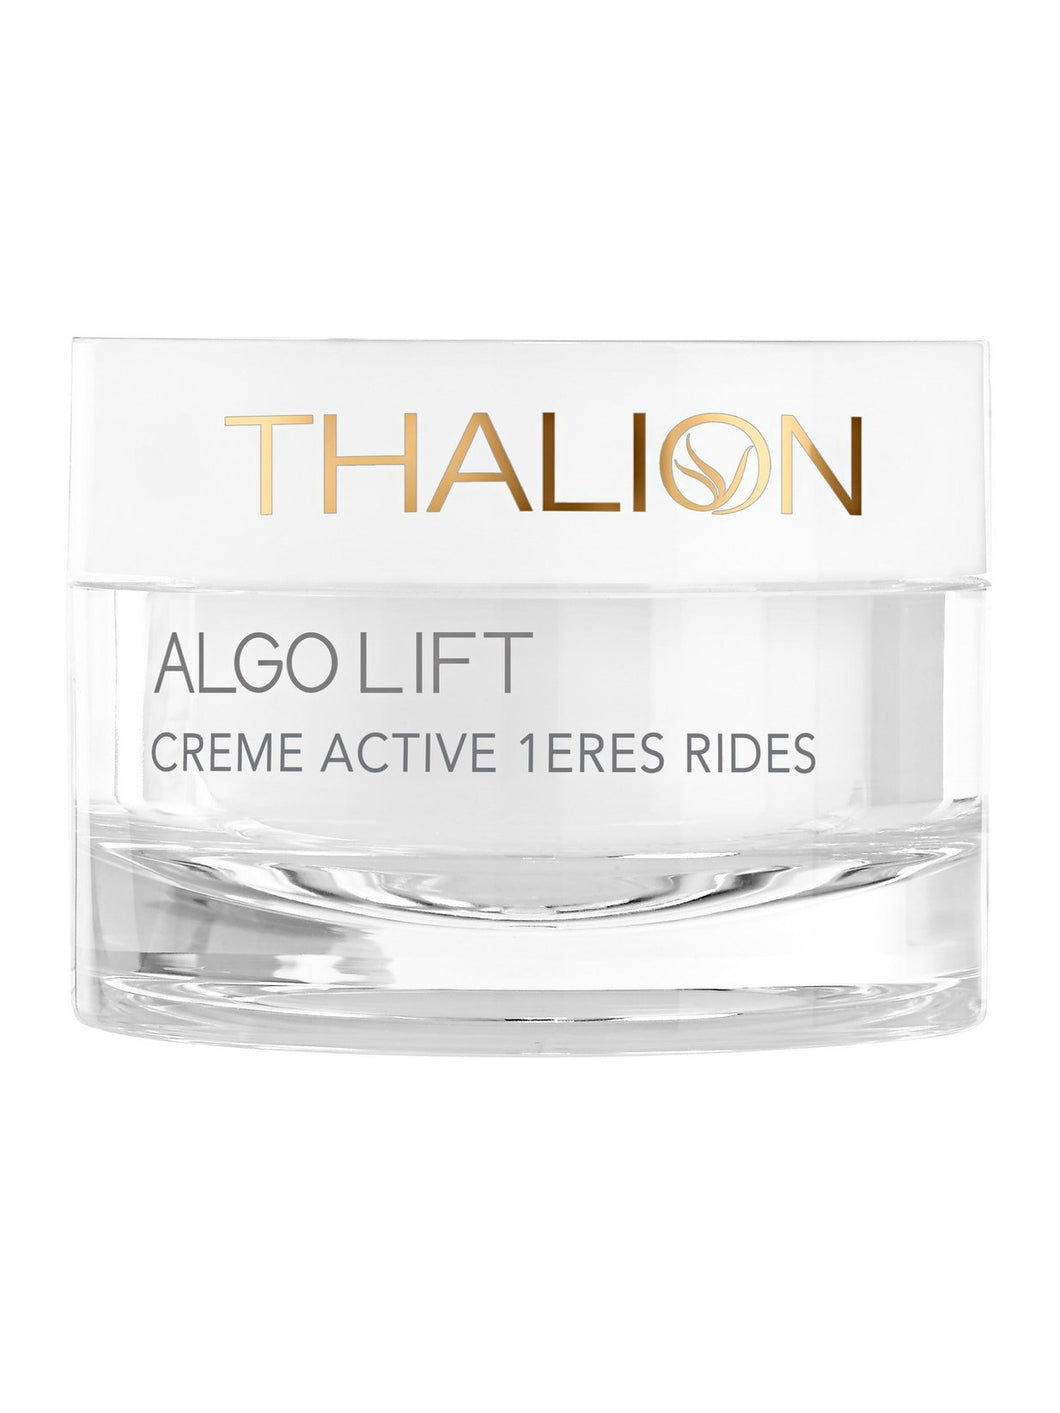 Algolift Crème Active 1ères Rides - Thalion